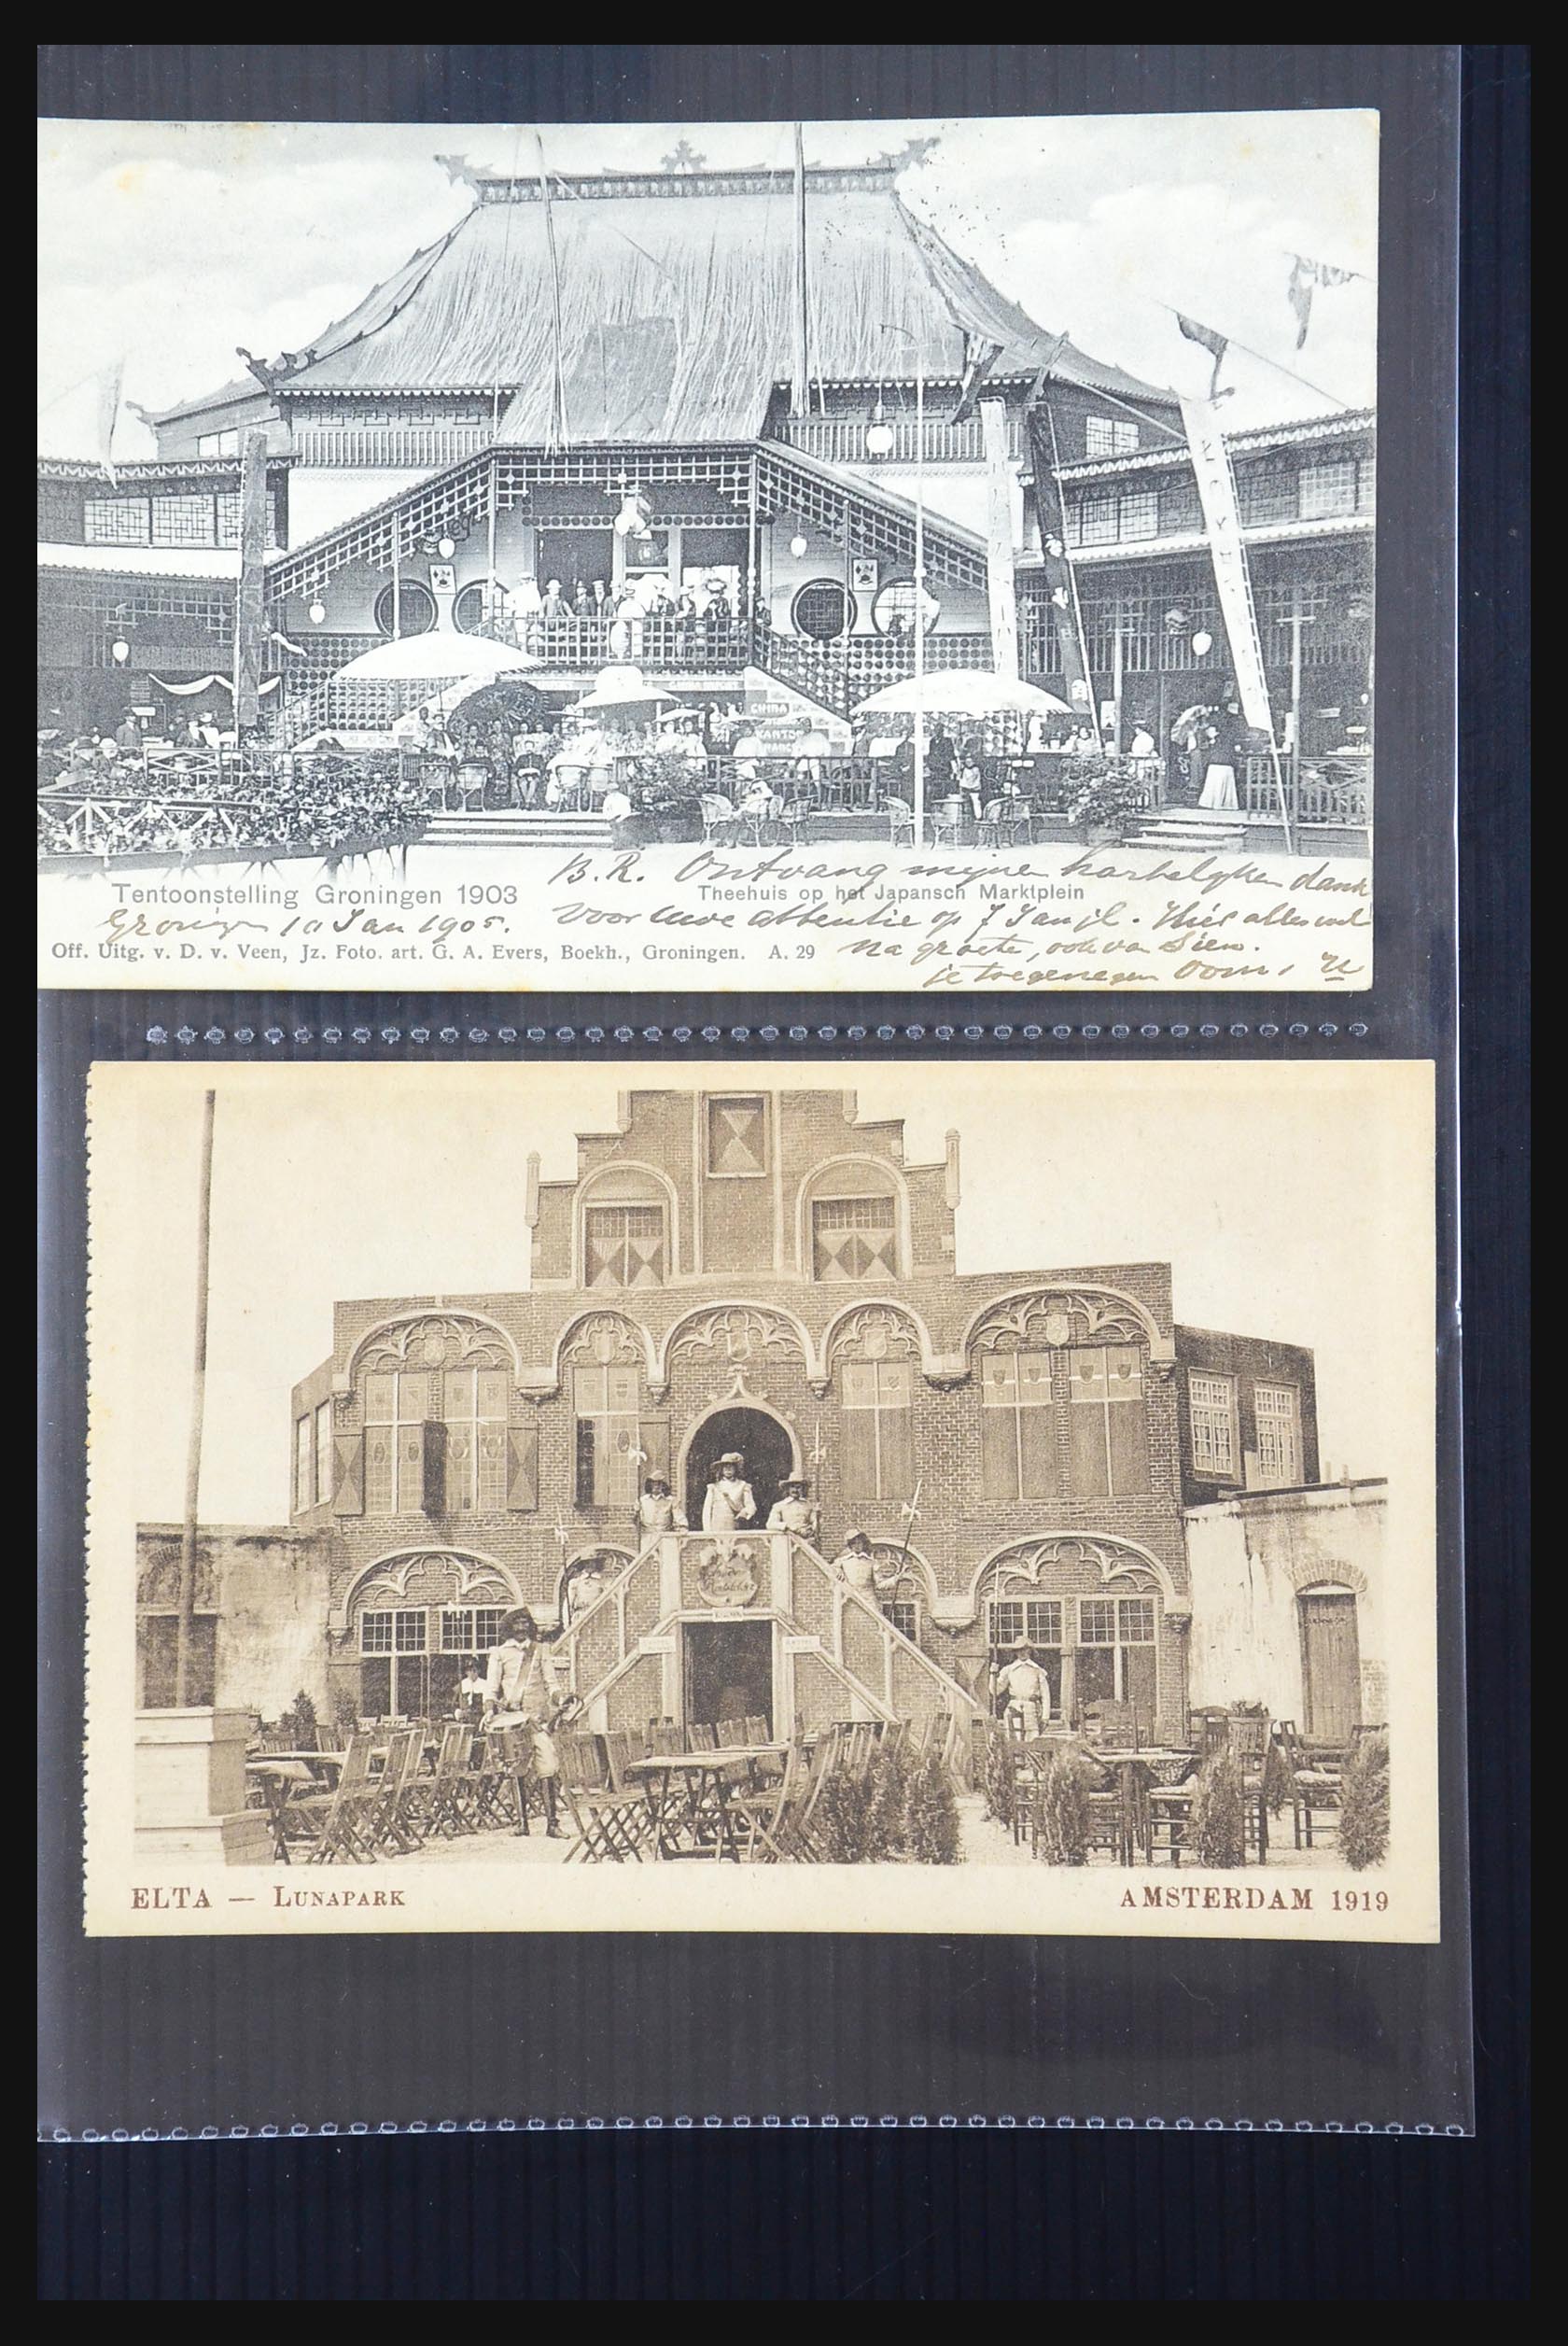 31338 077 - 31338 Nederland ansichtkaarten 1897-1914.